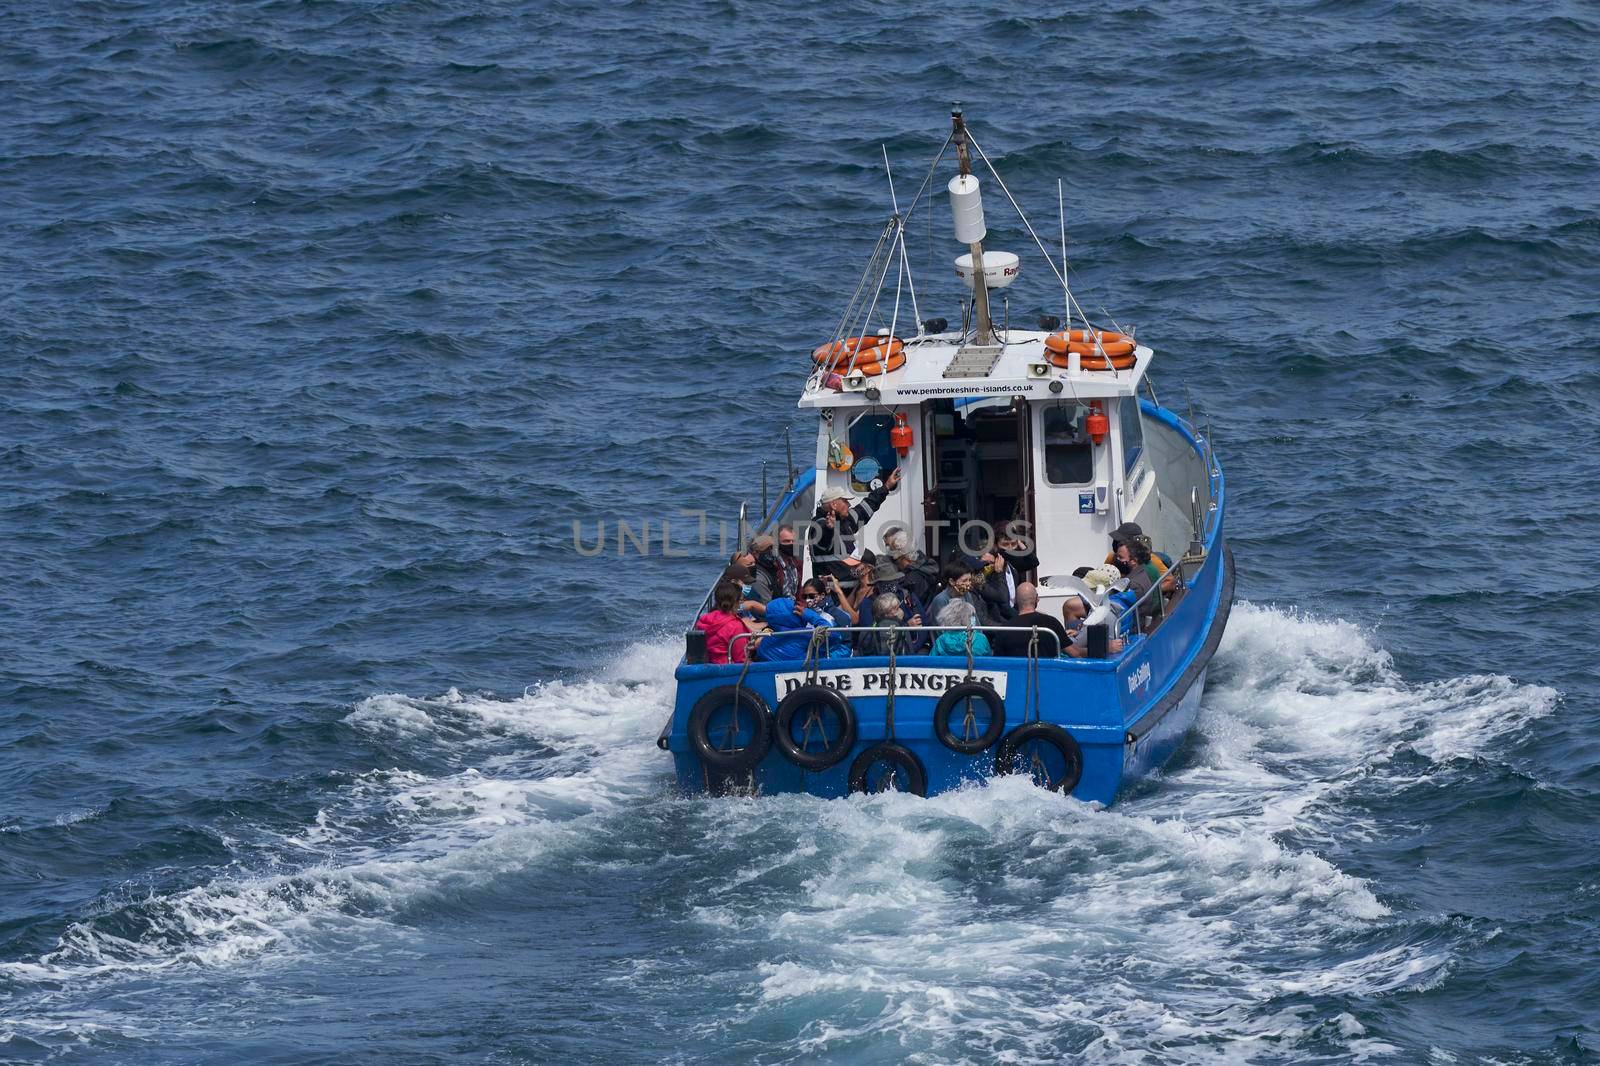 Boat to Skomer Island by JeremyRichards